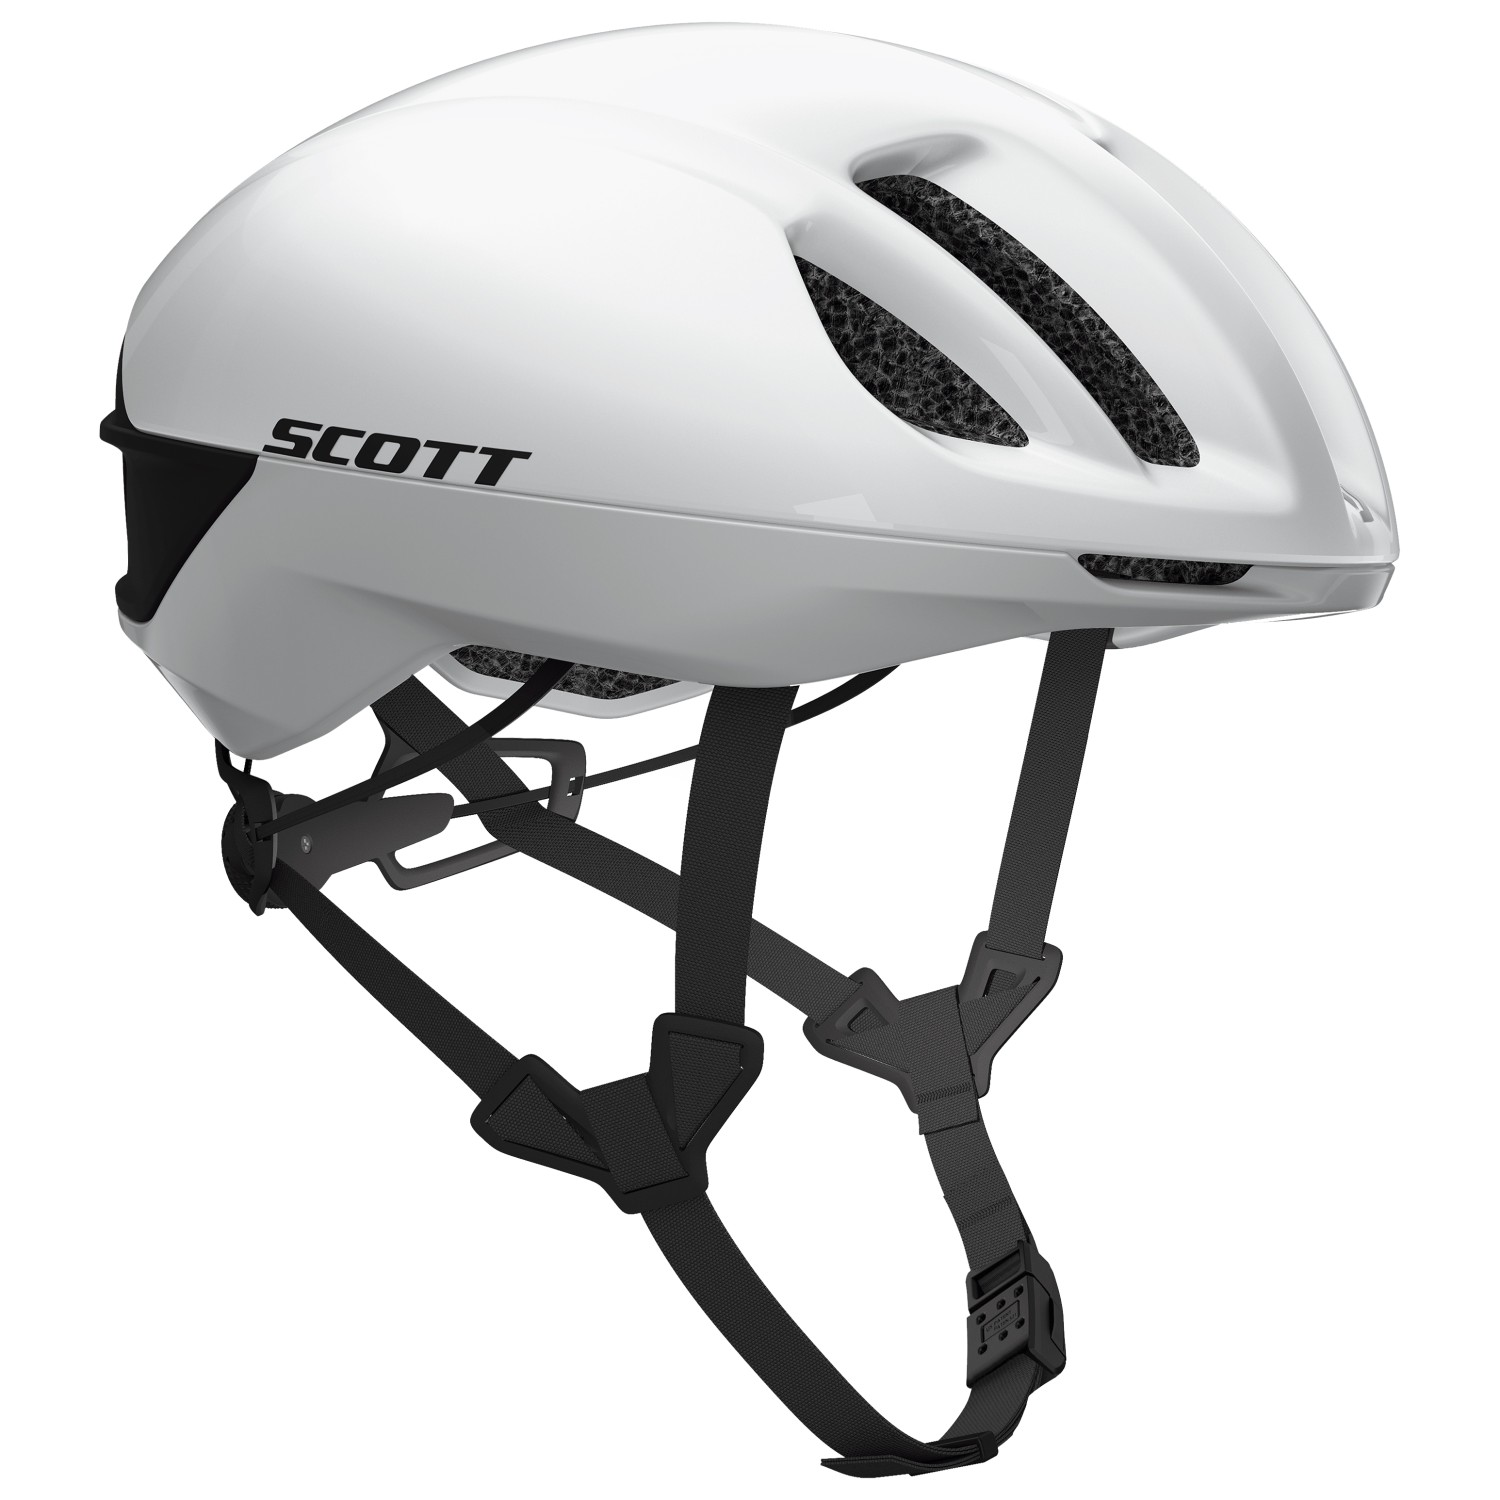 Велосипедный шлем Scott Cadence Plus, цвет White/Black scott шлем scott il doppio plus m 55 59 2101 pearl white